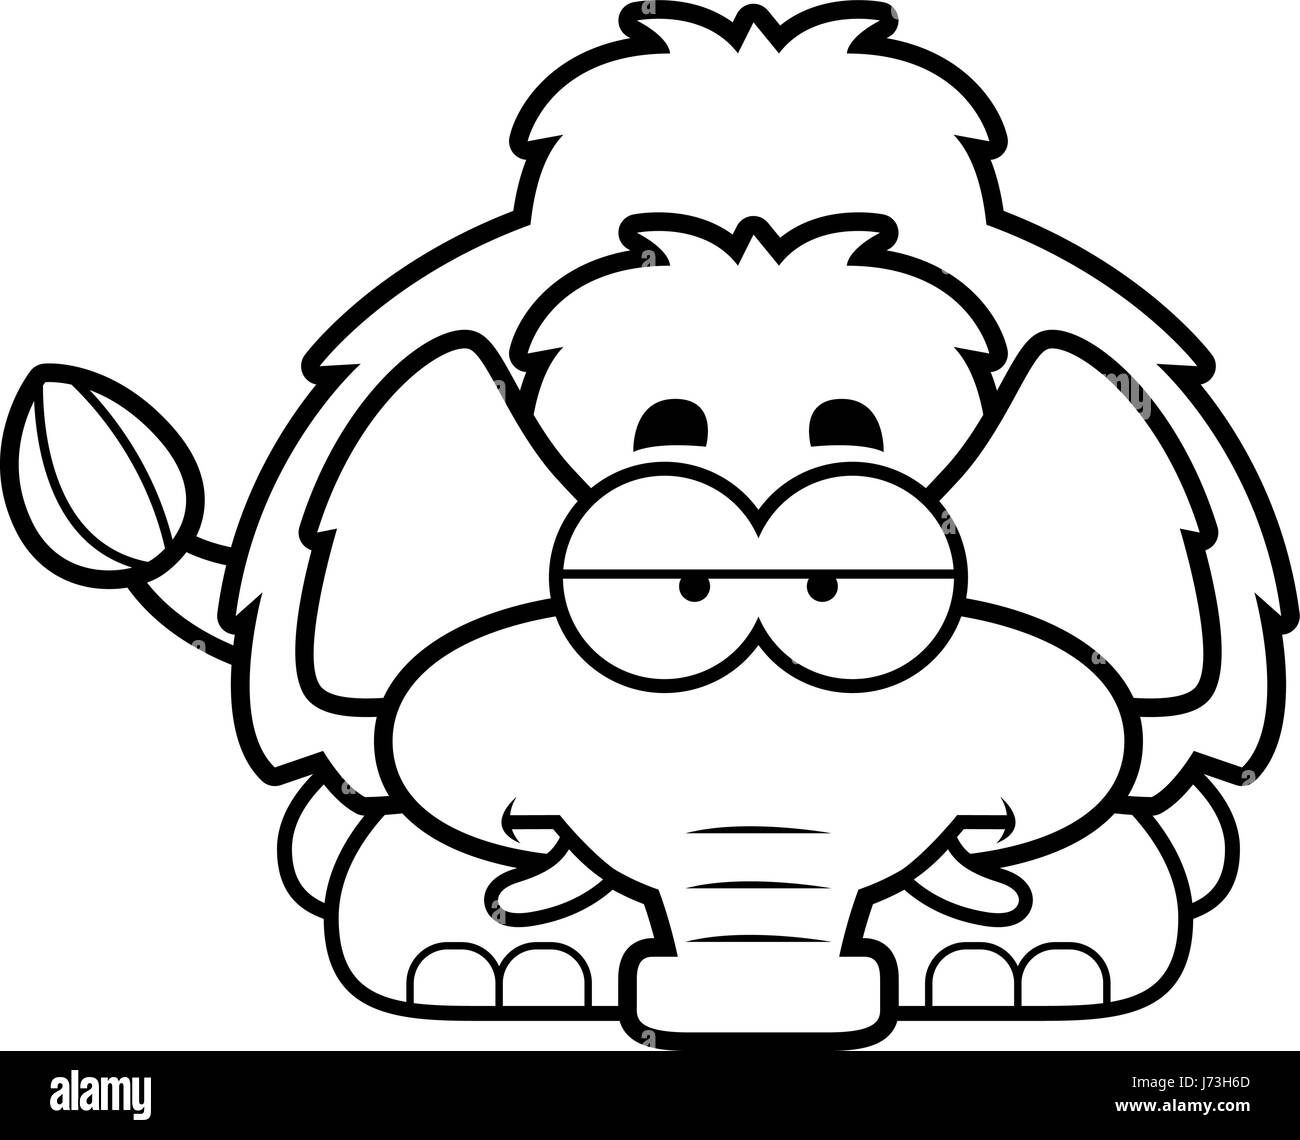 Un cartoon illustrazione di un po' di mammoth cercando annoiato. Illustrazione Vettoriale